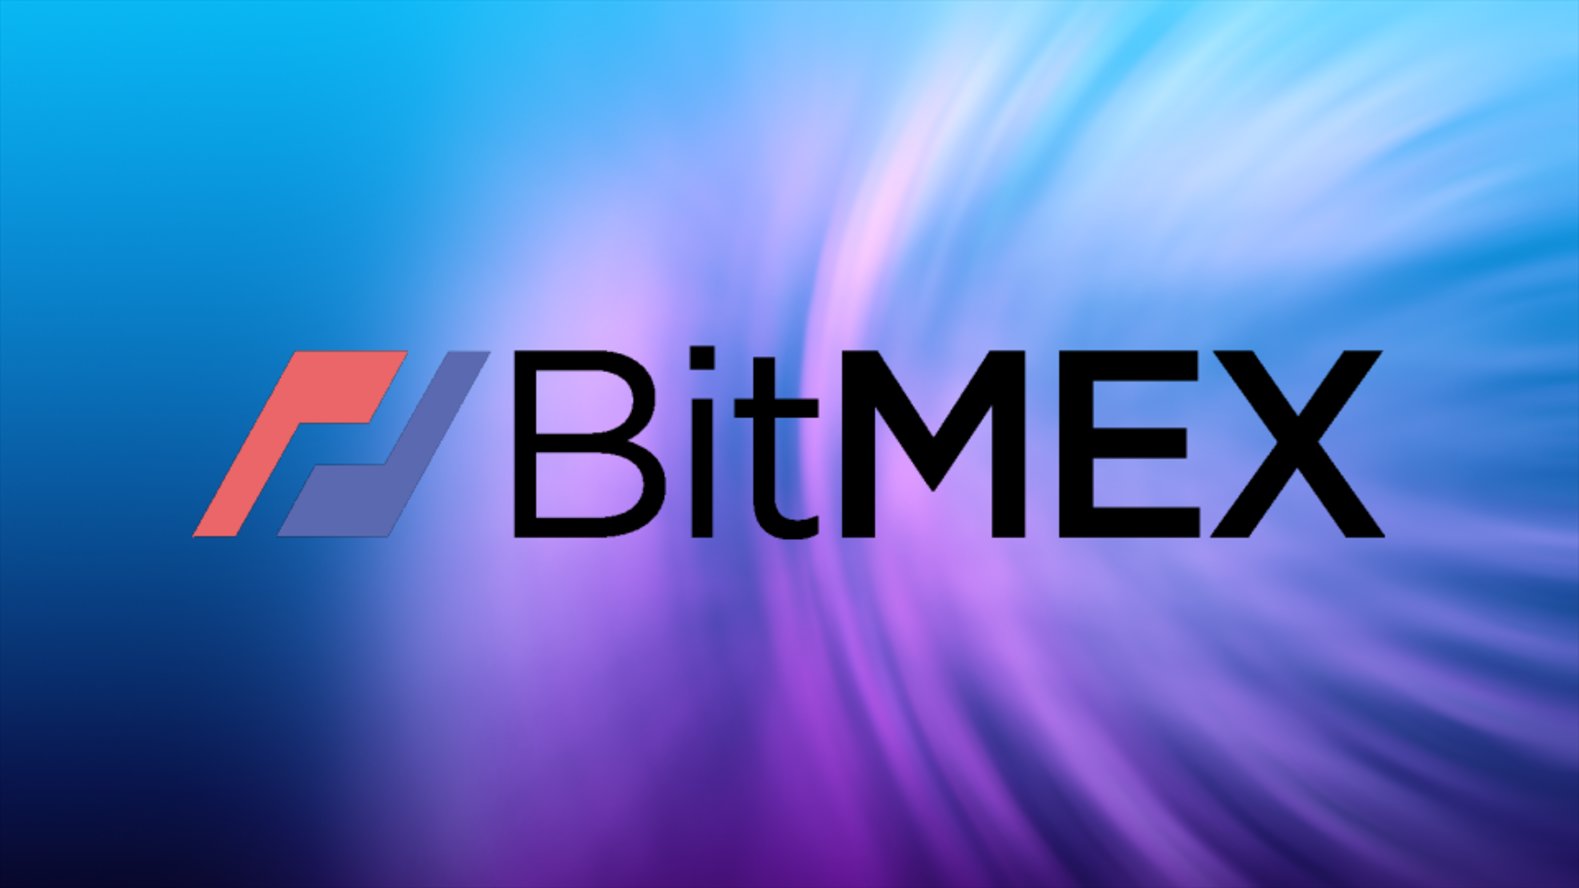 BMEX Trading to Begin on Friday 11th November States Bitmex